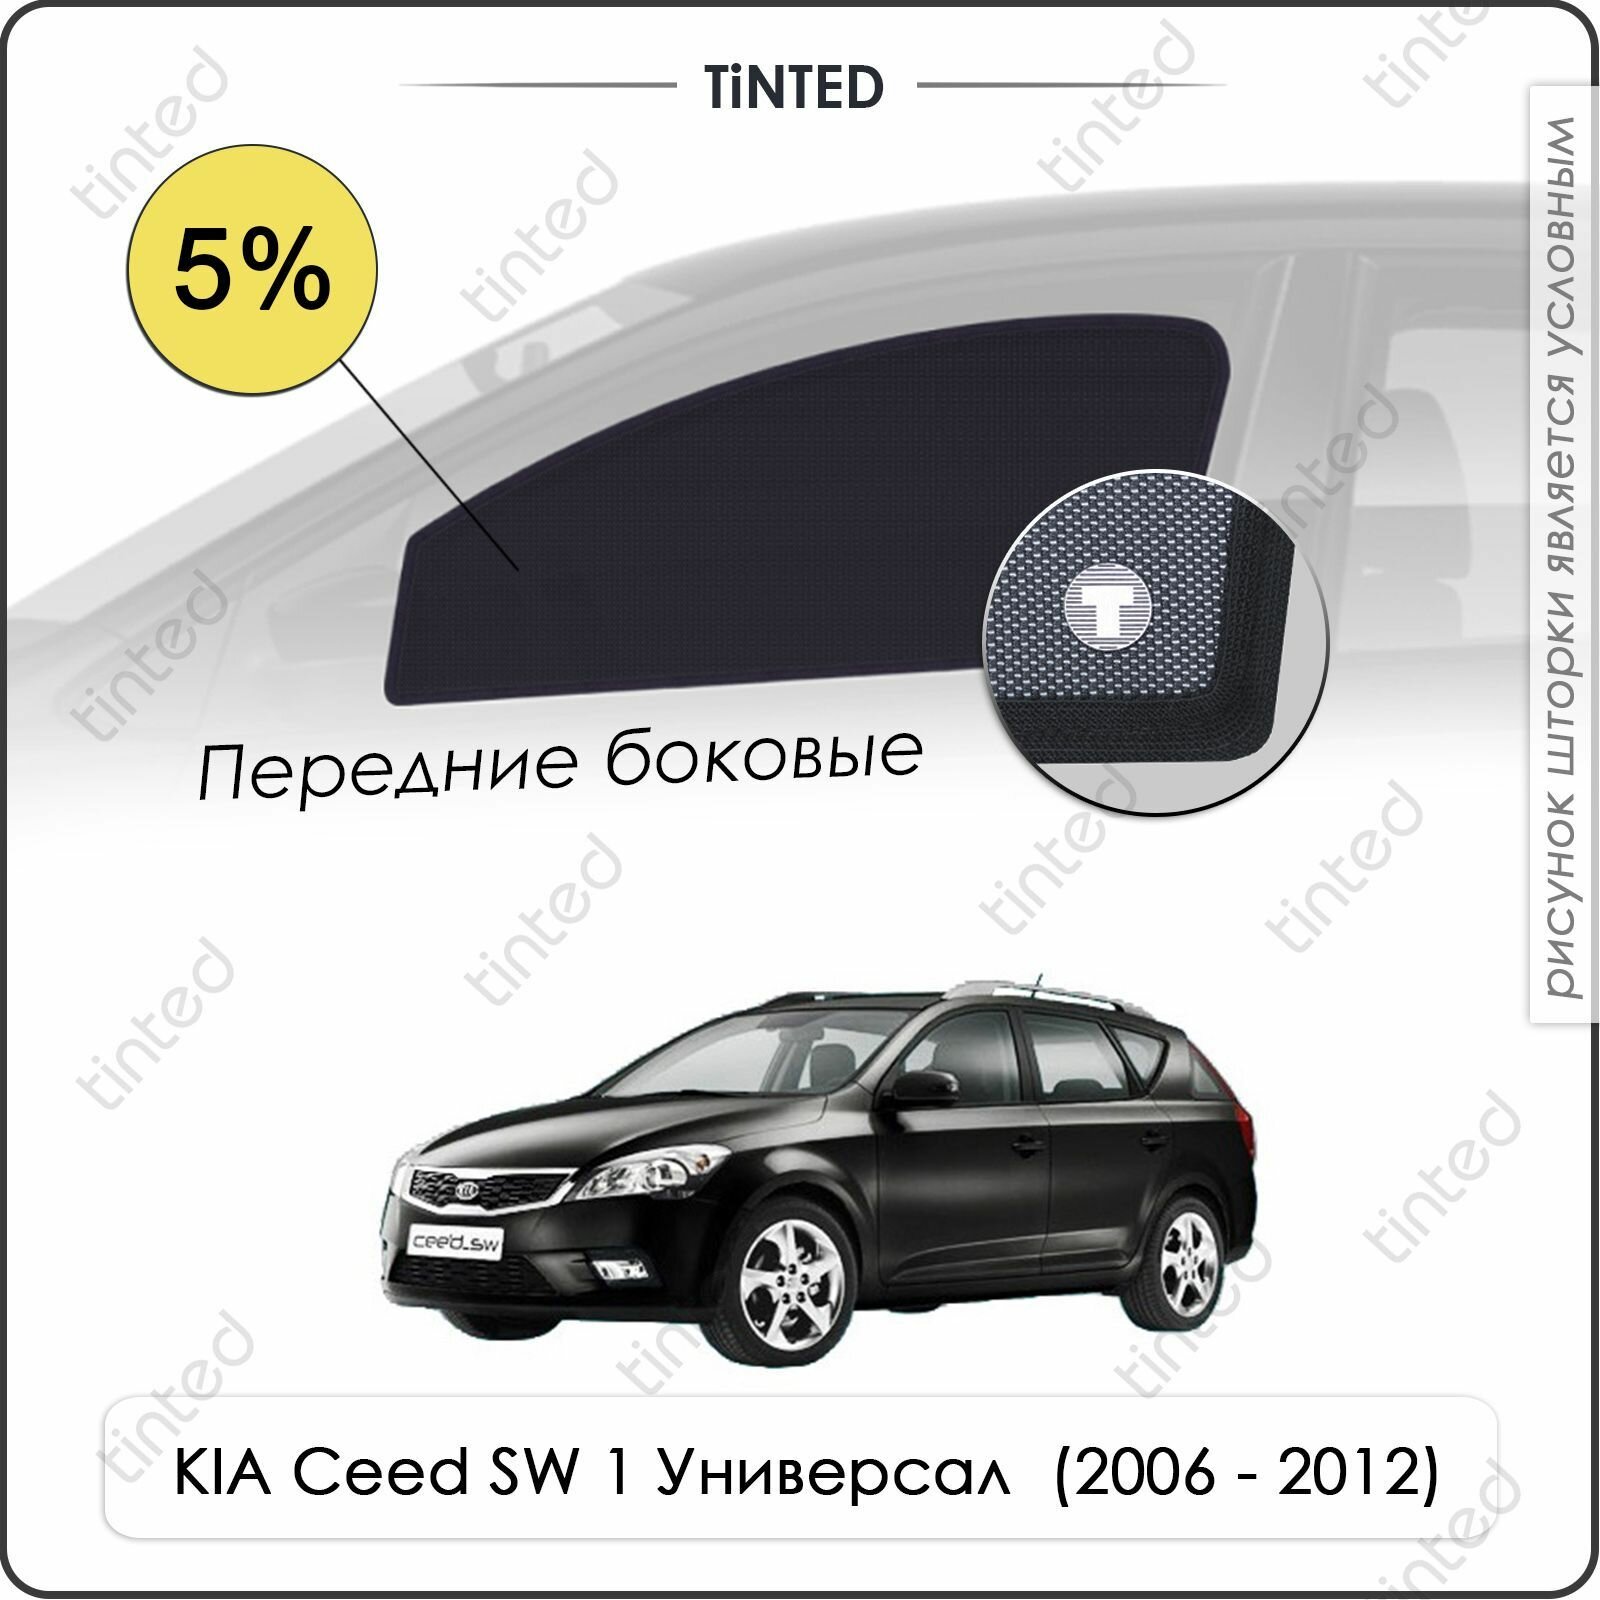 Шторки на автомобиль солнцезащитные KIA Ceed SW 1 Универсал 5дв. (2006 - 2012) на передние двери 5%, сетки от солнца в машину КИА СИД, Каркасные автошторки Premium